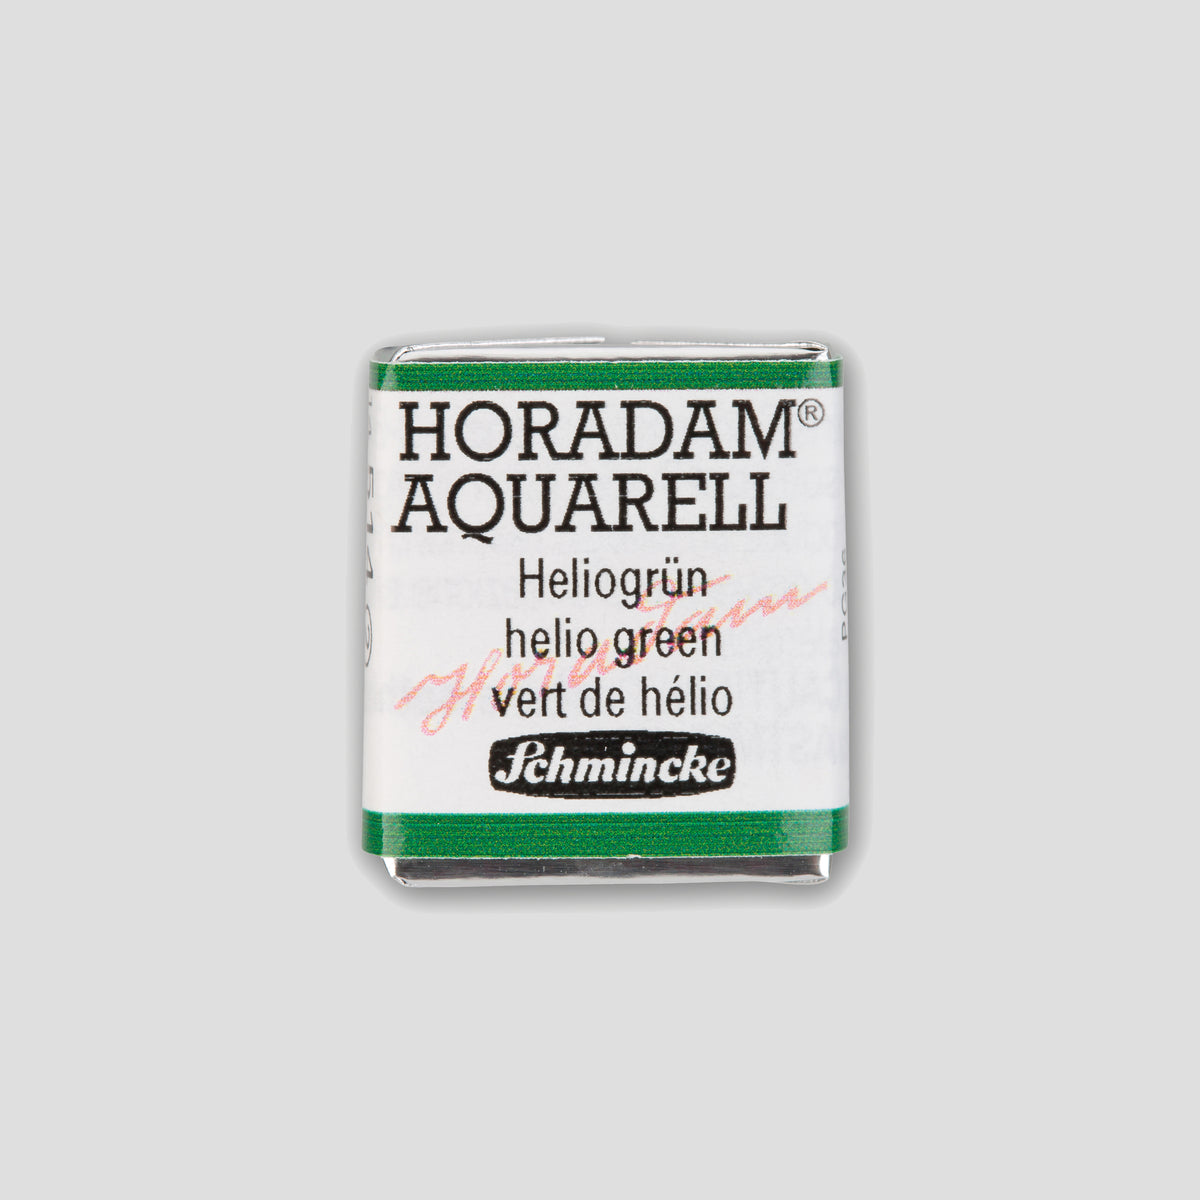 Schmincke Horadam® Half pan 514 Helio green 2